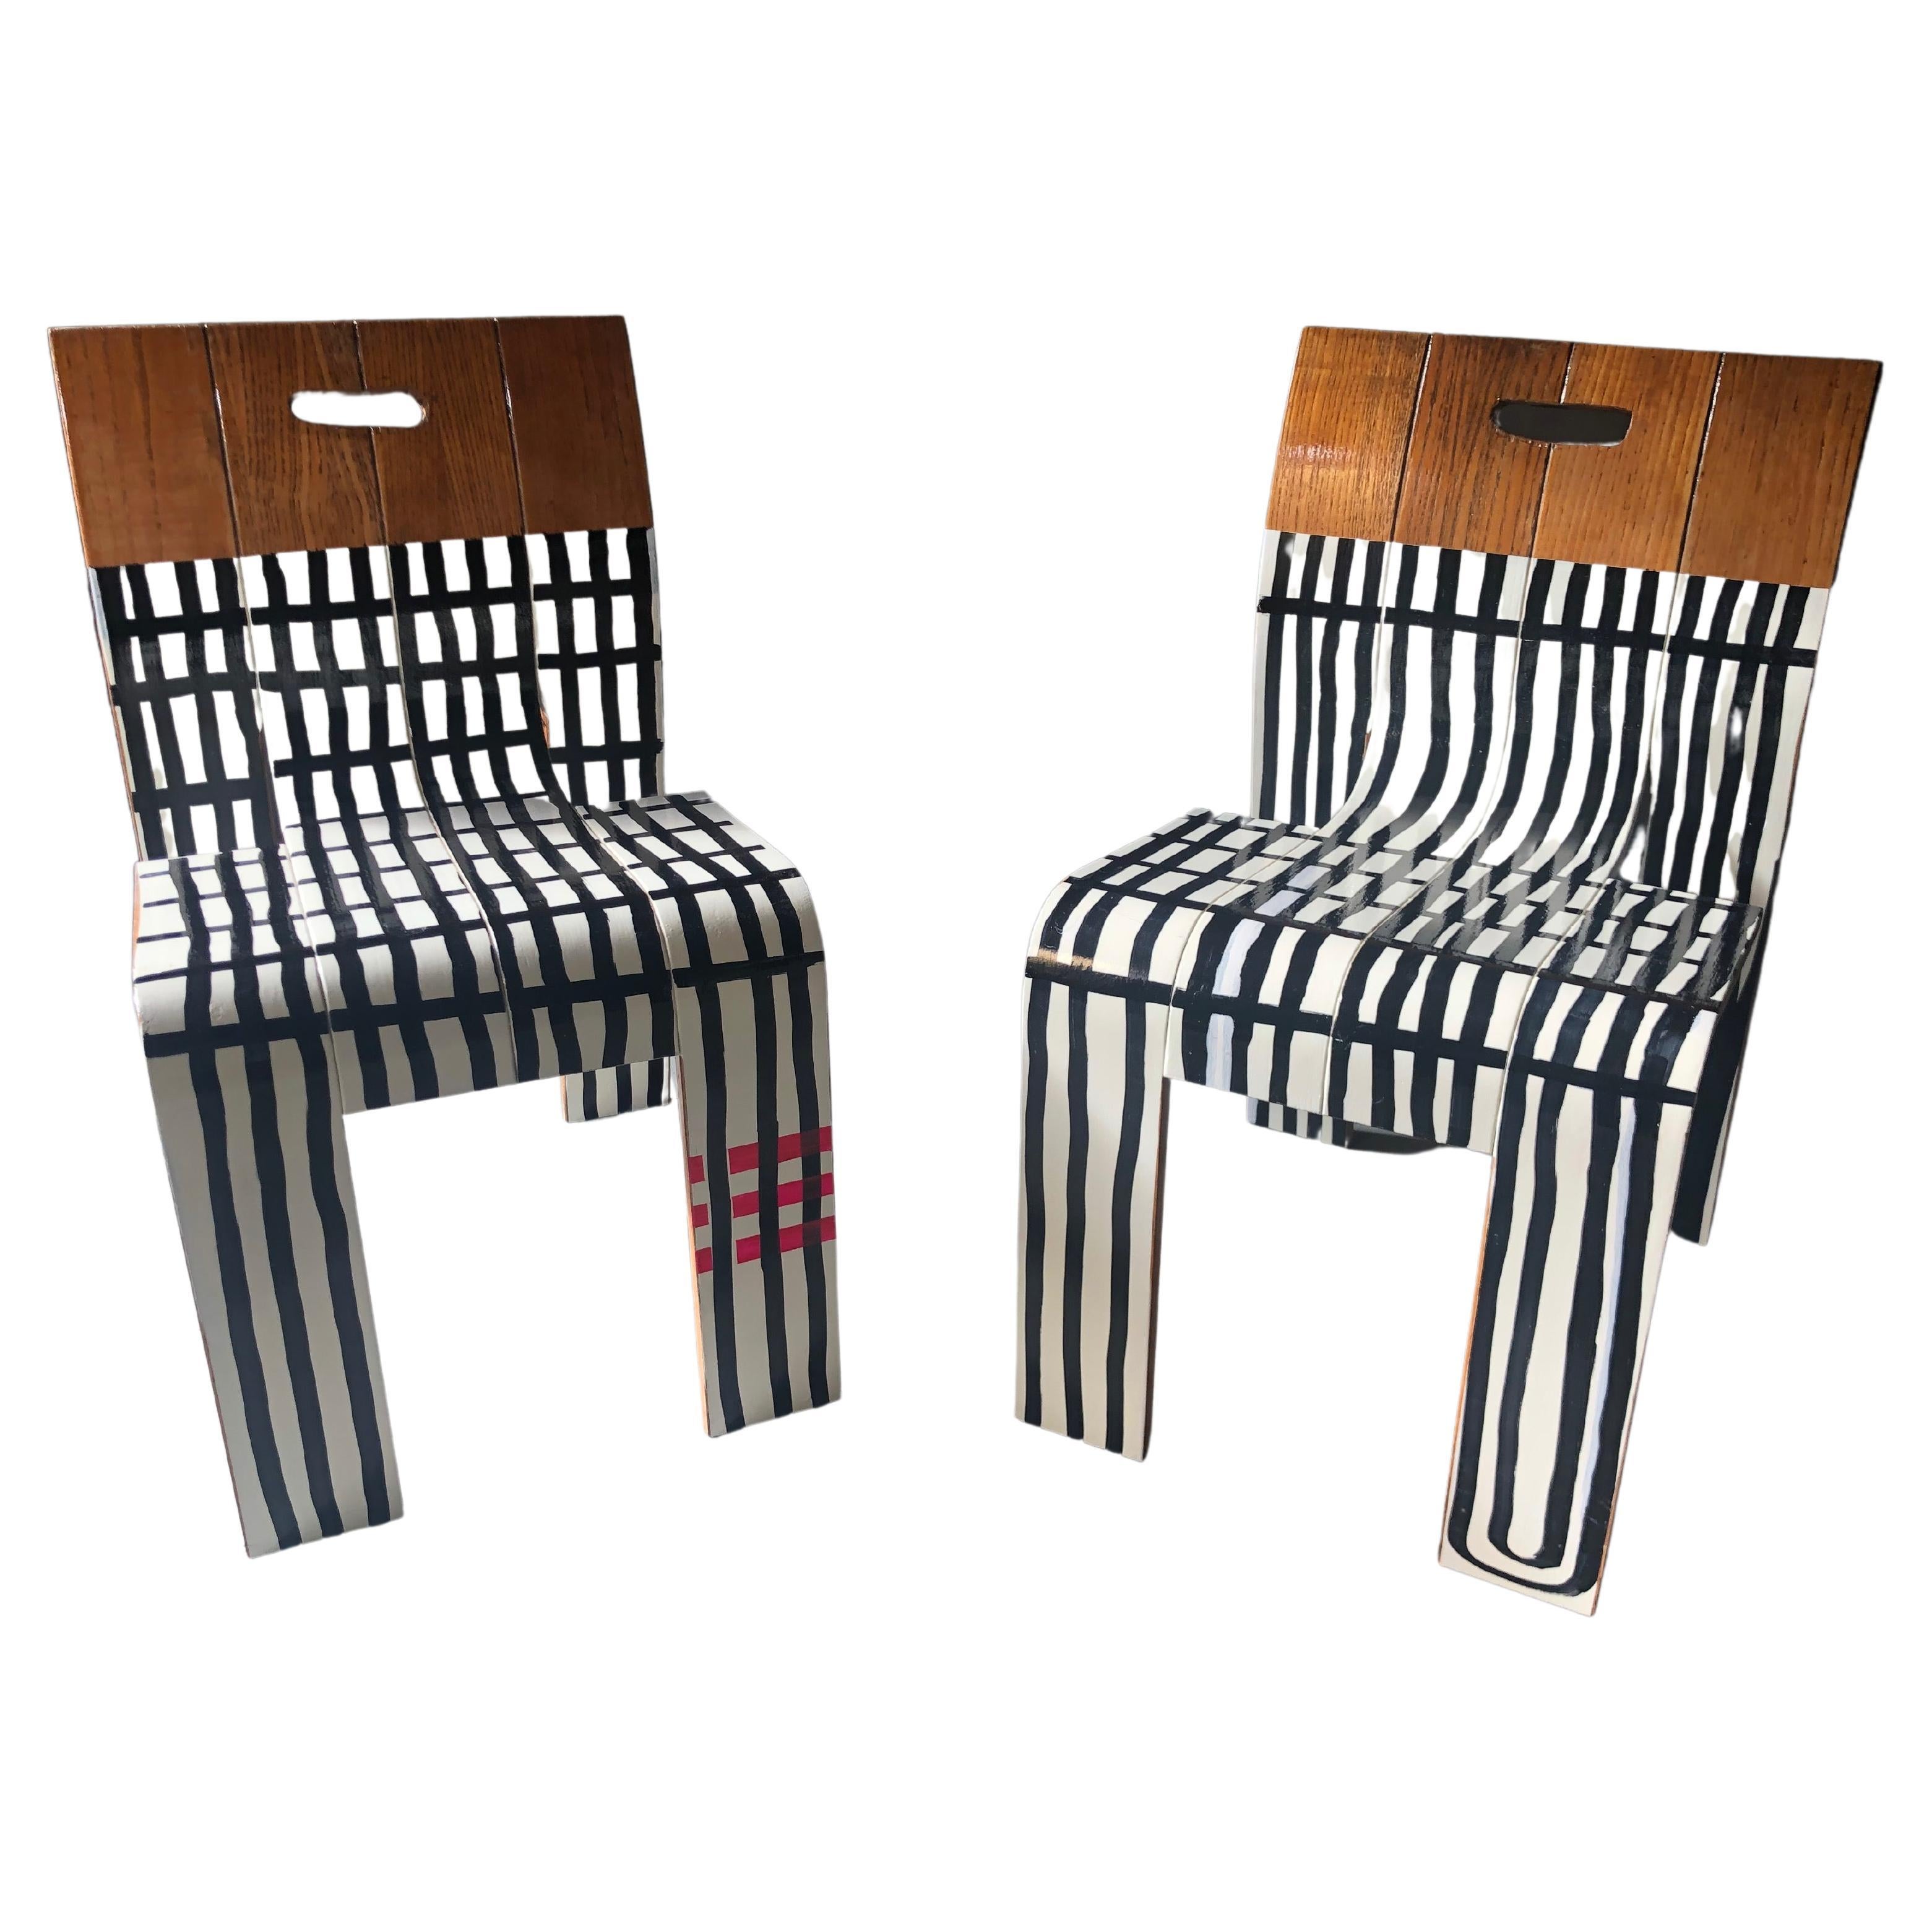 Zwei gestreifte Stühle, zeitgenössisch, von Markus Friedrich Staab